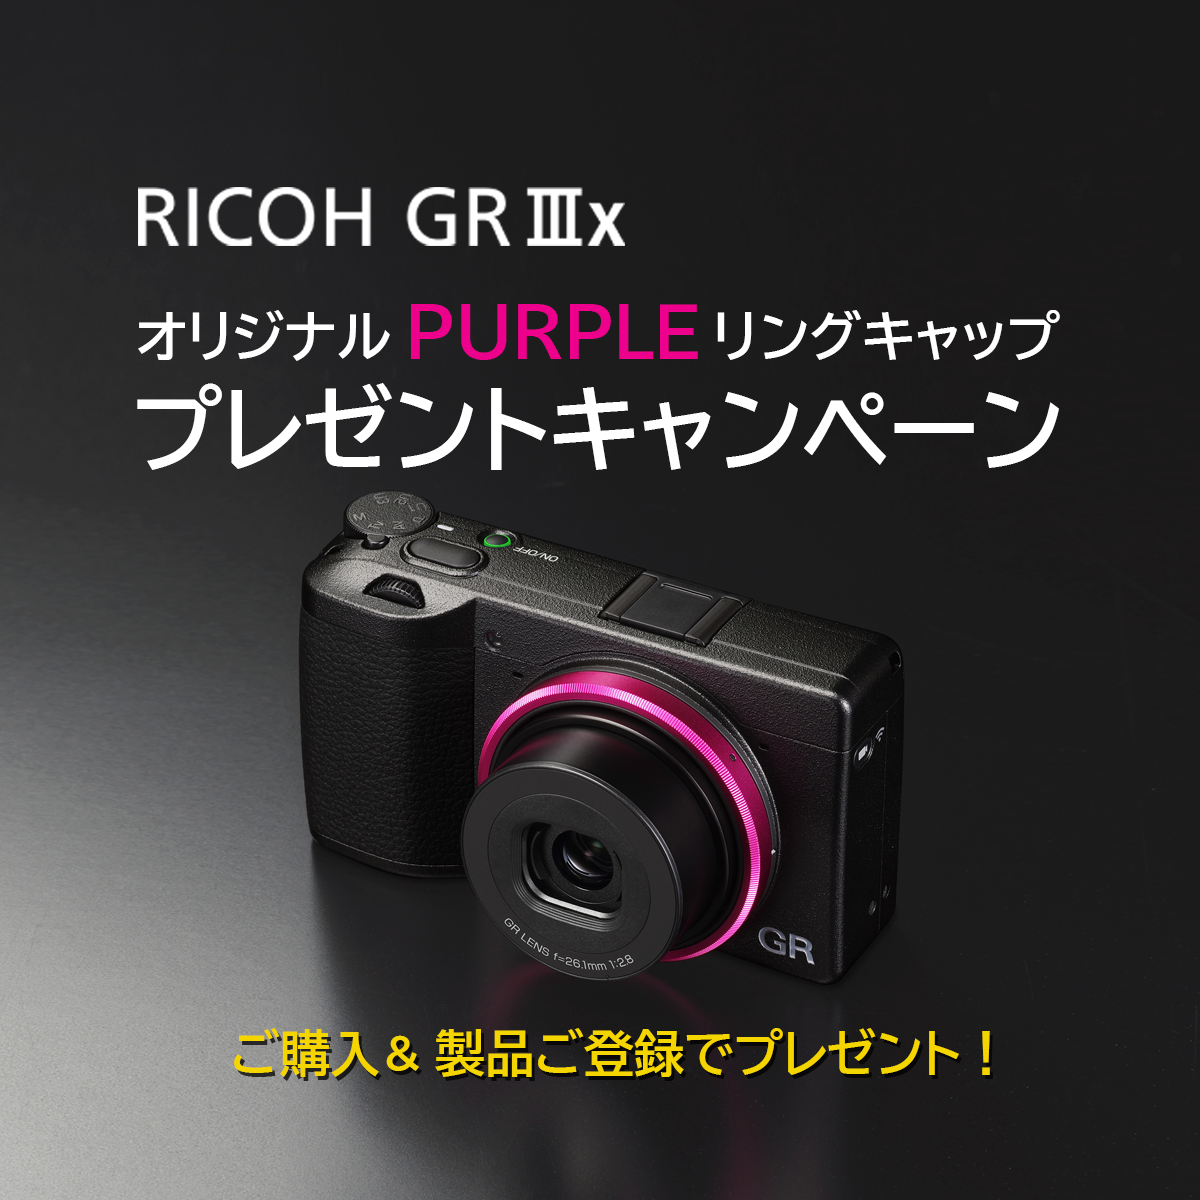 RICOH GR IIIx オリジナル PURPLEリングキャッププレゼント | RICOH ...